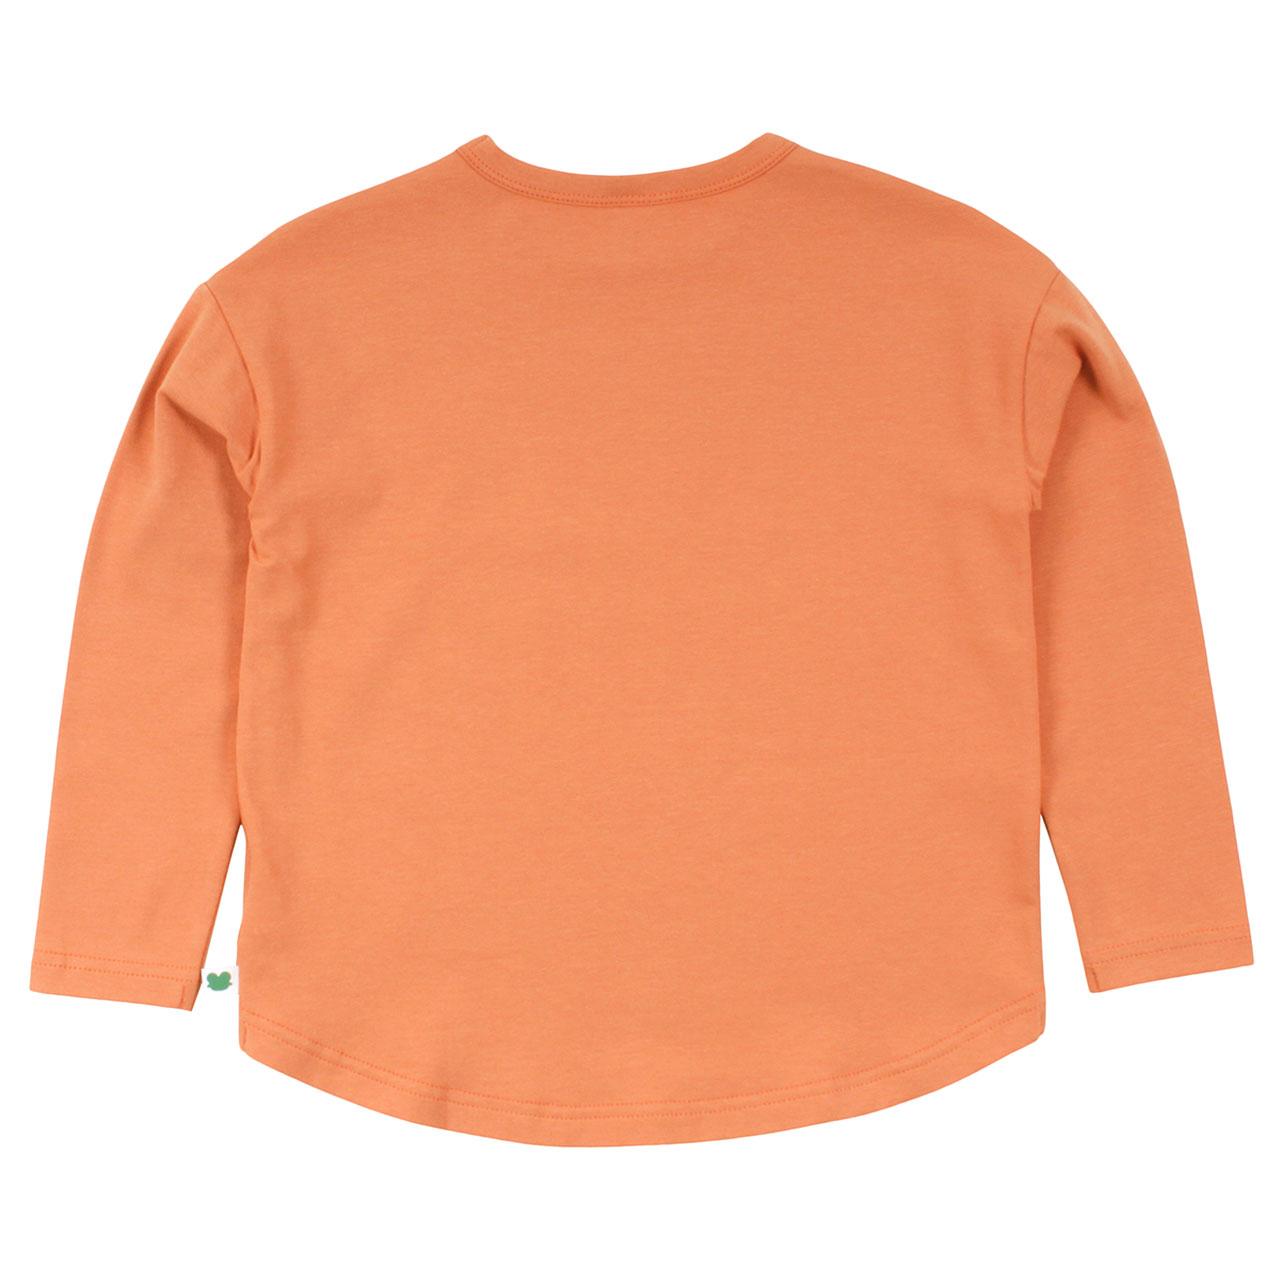 Lockeres Basic Langarmshirt in hellem apricot-orange